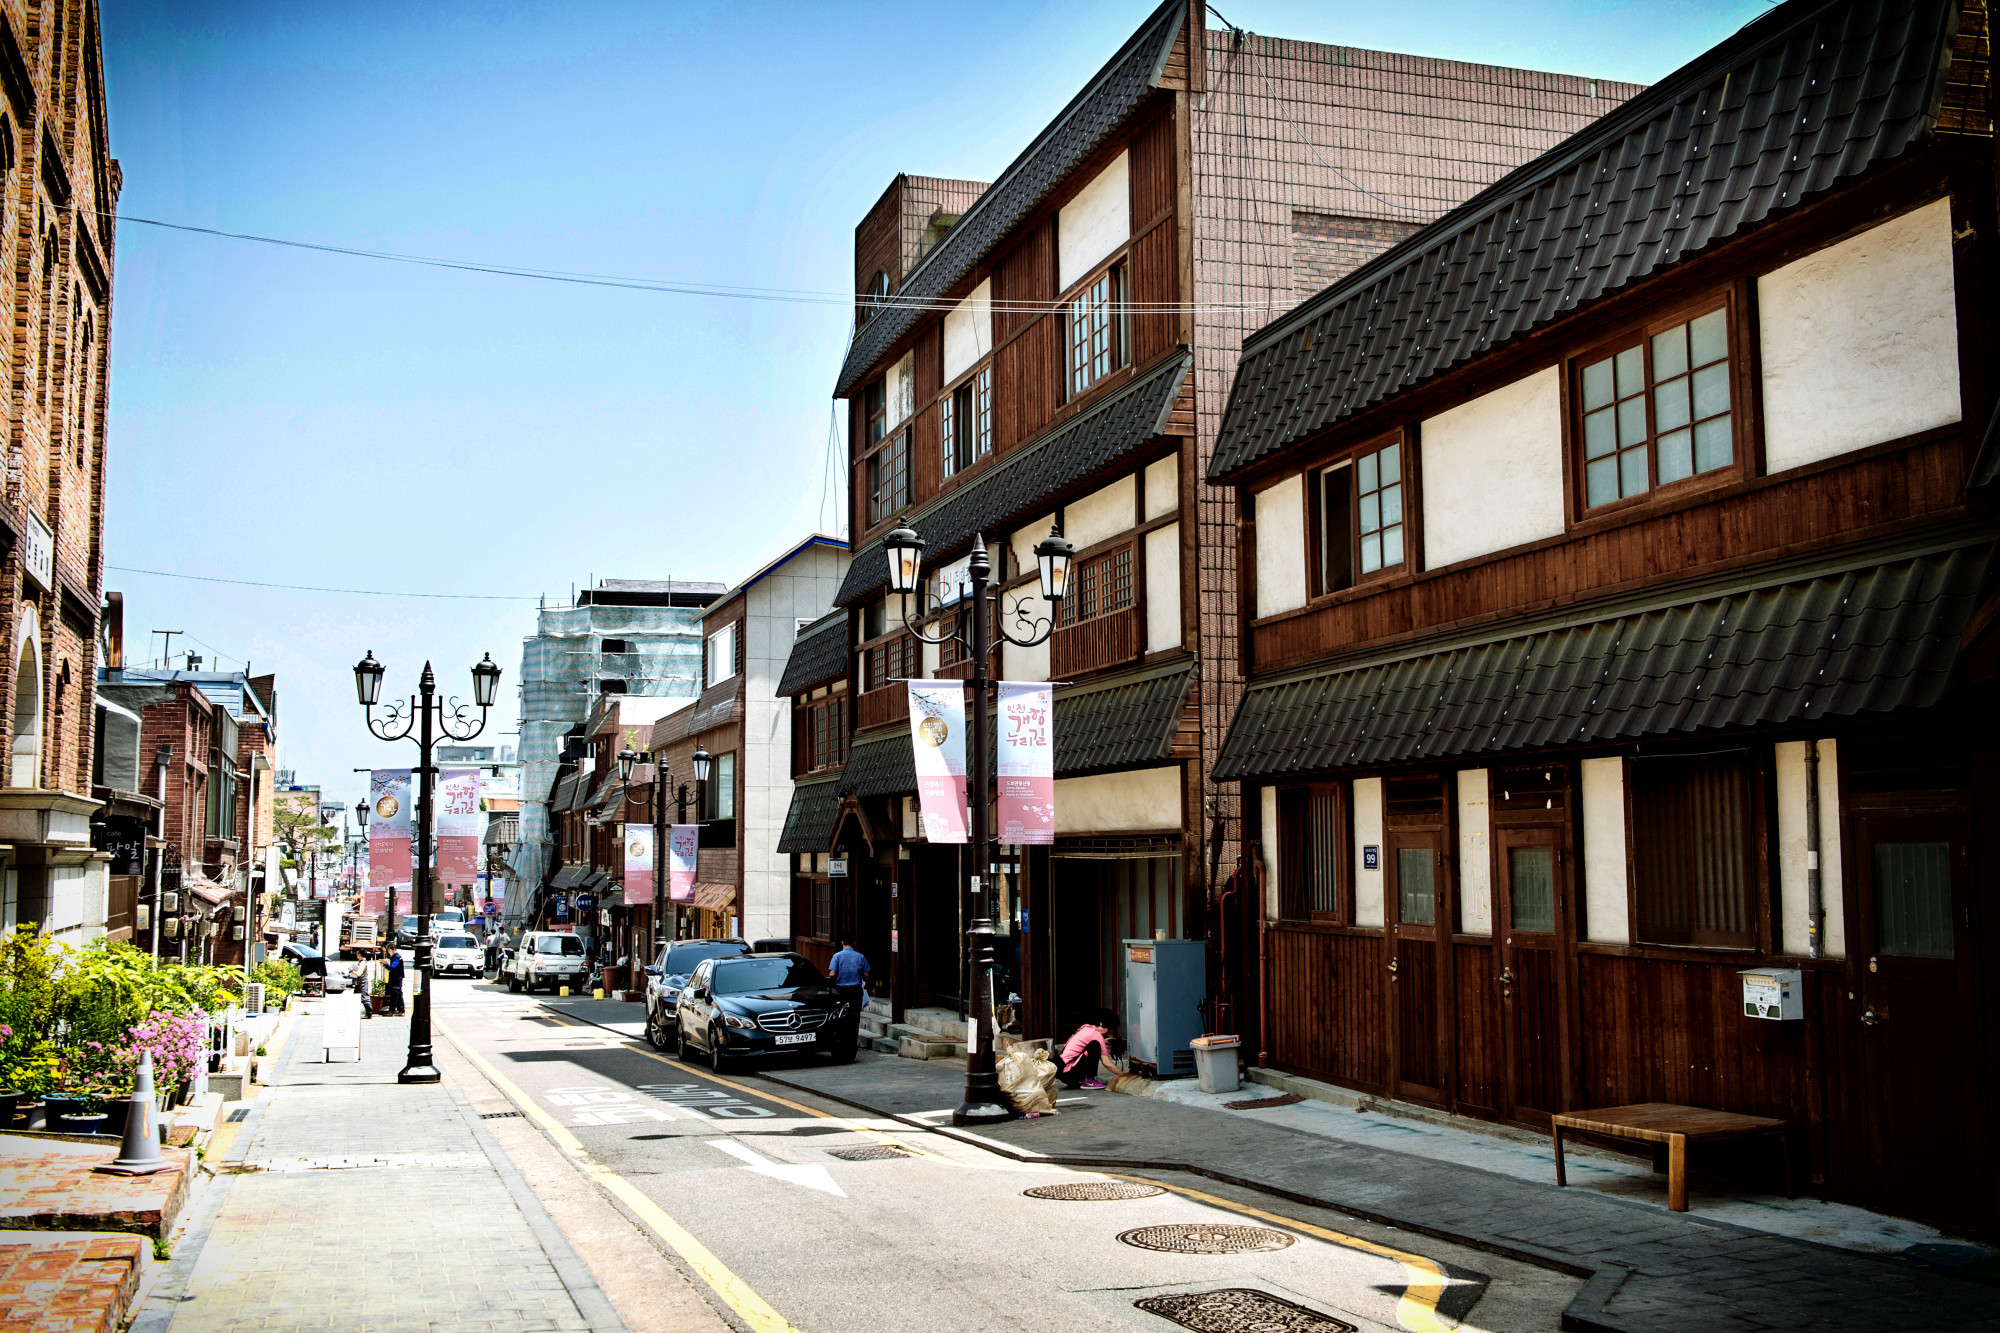 Khi Cảng Incheon được khai trương vào năm 1883, đây là nơi người ta có thể cảm nhận được lịch sử và văn hóa phong phú được tích lũy hơn 126 năm. Trước đây được sử dụng bởi lãnh sự quán Nhật Bản, Văn phòng Jung-gu, chi nhánh Incheon của Ngân hàng số 1, 18 và 58 của Nhật Bản và các kiến ​​trúc lịch sử hiện đại khác có thể được tìm thấy nguyên vẹn ở đây. Các di tích lịch sử khác như Cựu Japan Mail and Shipping Inc., Incheon Art Platform, Jemulpo Gurakbu, và những di tích khác cũng có sẵn cho du khách xem tại Incheon Gaehangjang (Khu vực cảng mở). Đối với những người quan tâm đến việc tìm hiểu thêm, một chuyến tham quan có hướng dẫn bởi một chuyên gia du lịch văn hóa Incheon có sẵn khi đặt trước.